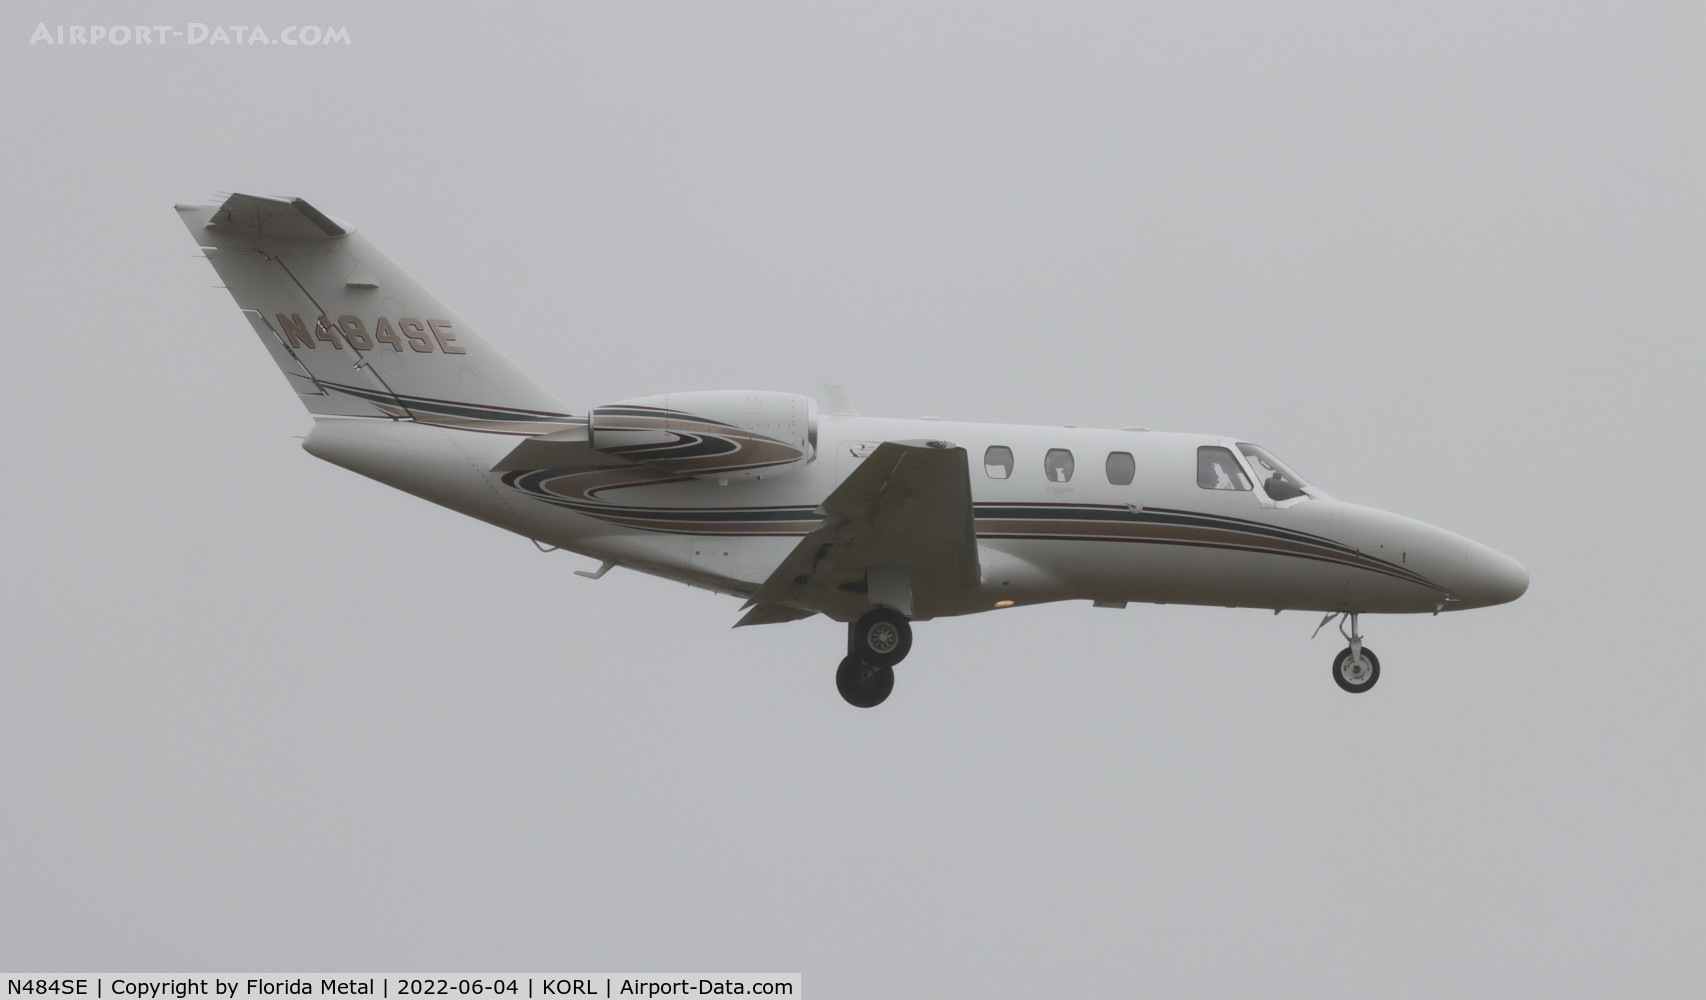 N484SE, 2007 Cessna 525 CitationJet CJ1+ C/N 525-0657, C525 zx